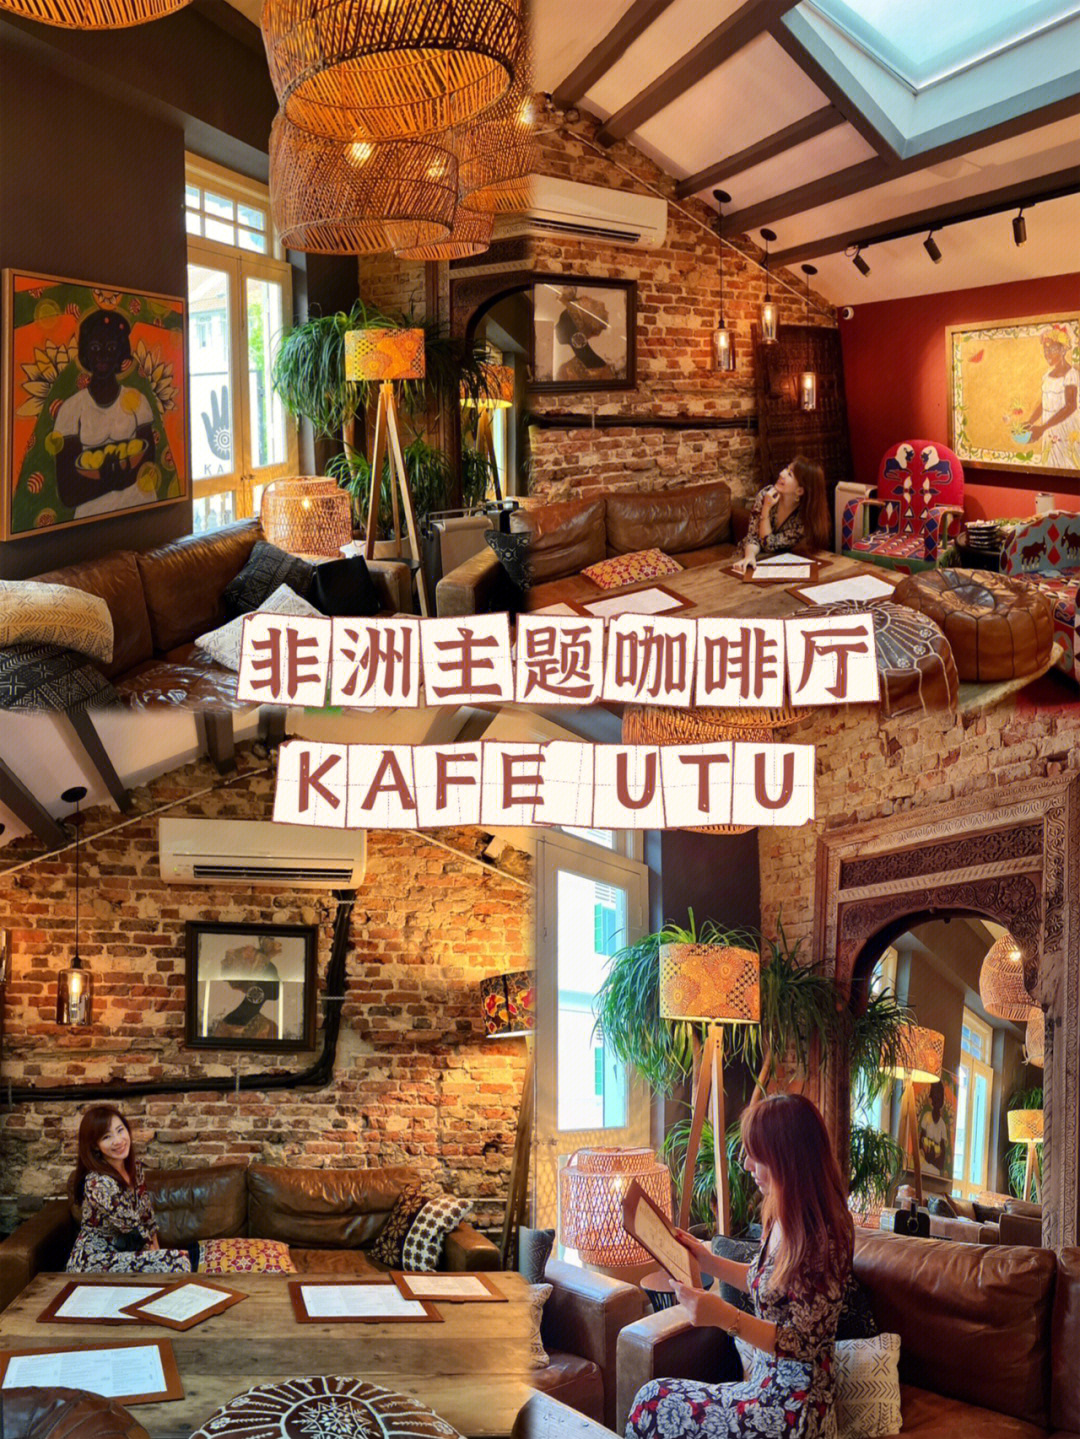 非洲风格主题咖啡厅kafeutu00